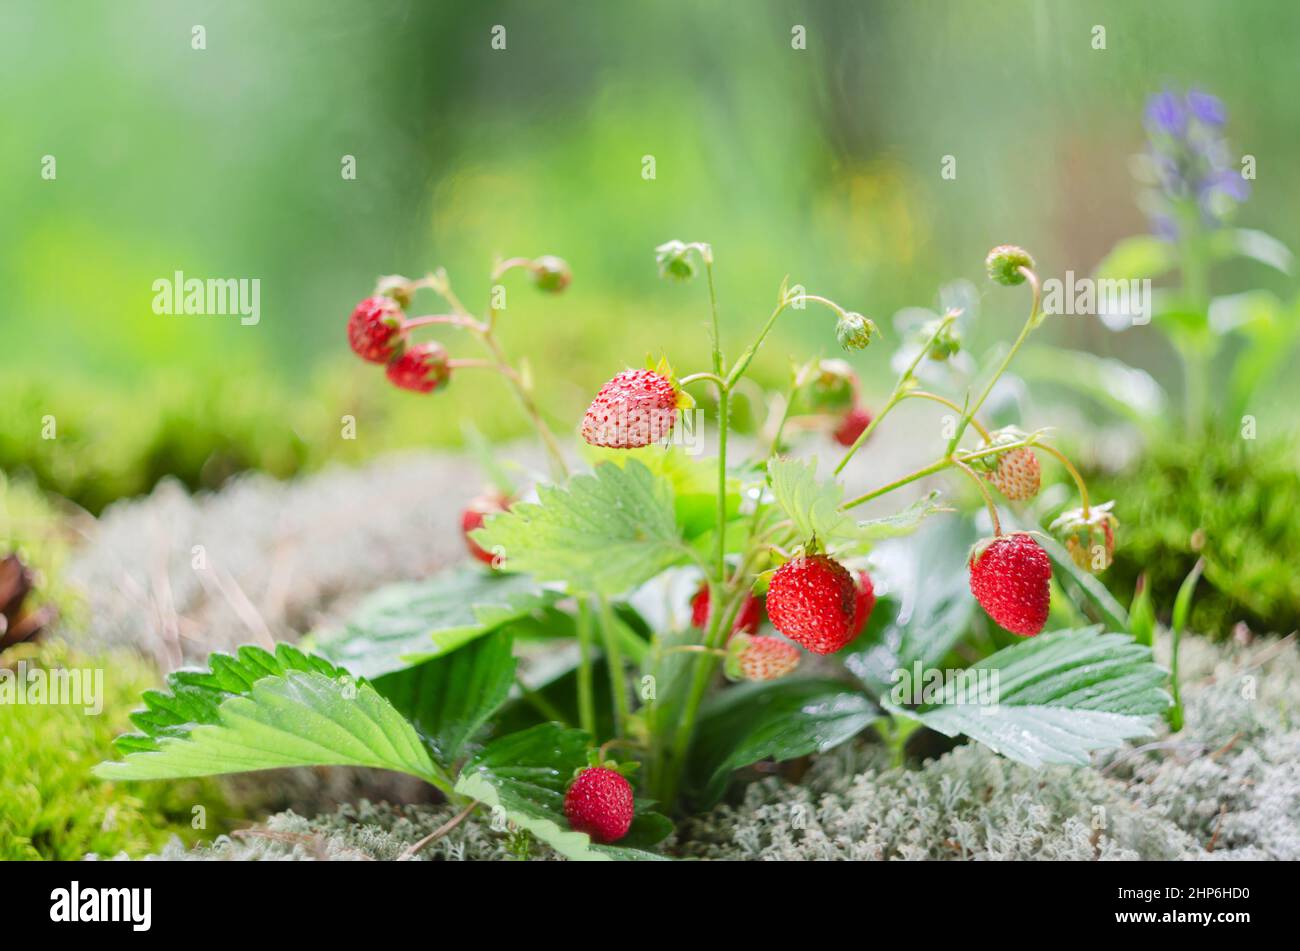 Une brousse de fraises sauvages en gros plan, avec des baies de différentes ripeness et feuilles vertes, pousse en mousse sur un fond organique défoqué. Sélection Banque D'Images